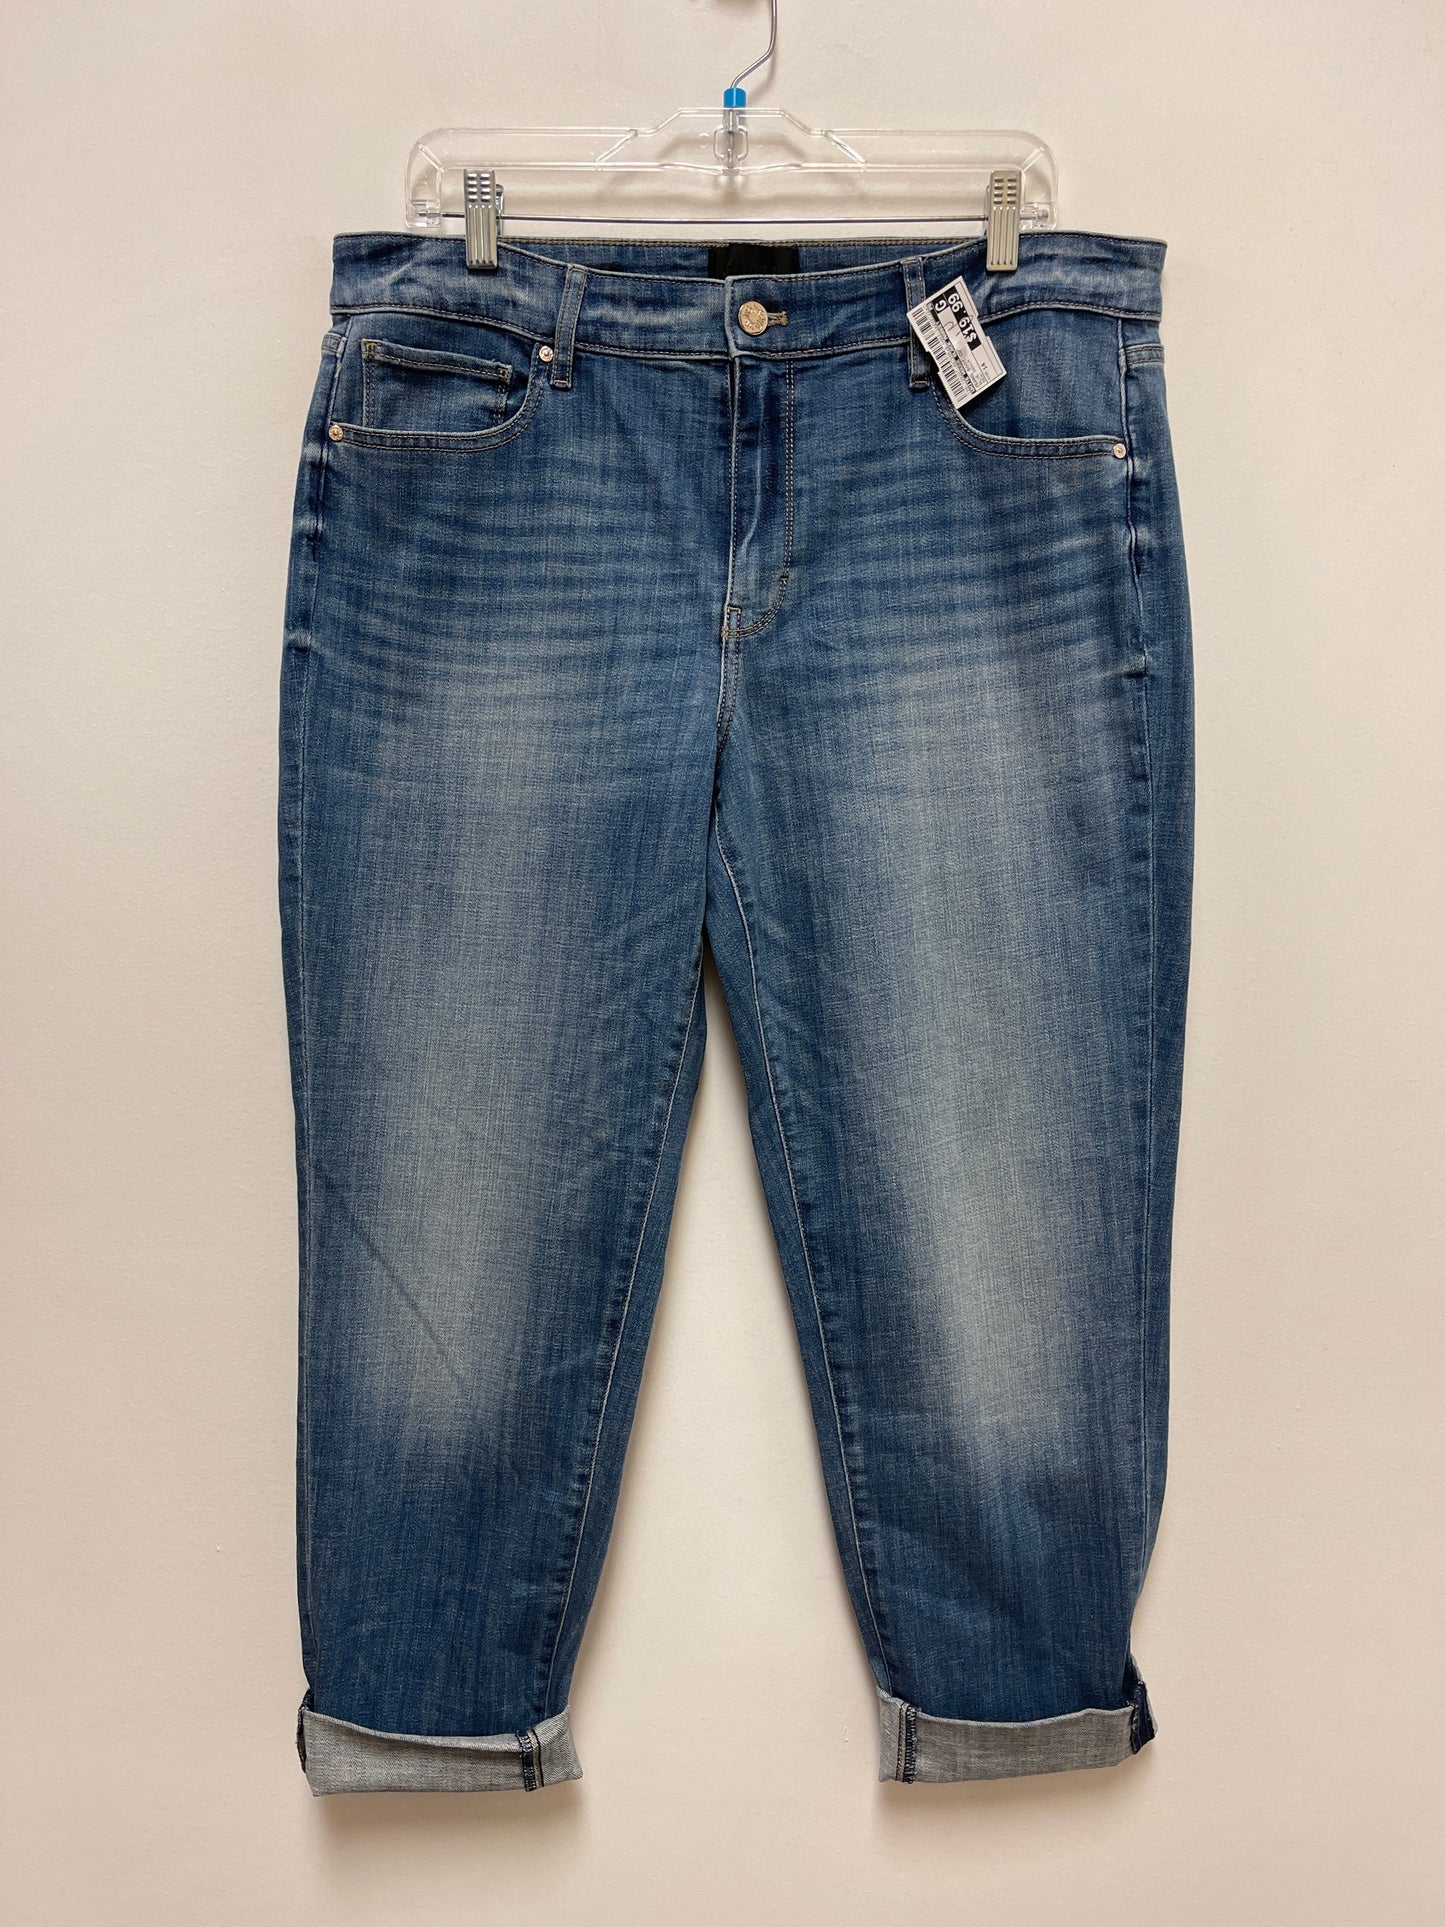 Blue Denim Jeans Boot Cut White House Black Market, Size 14